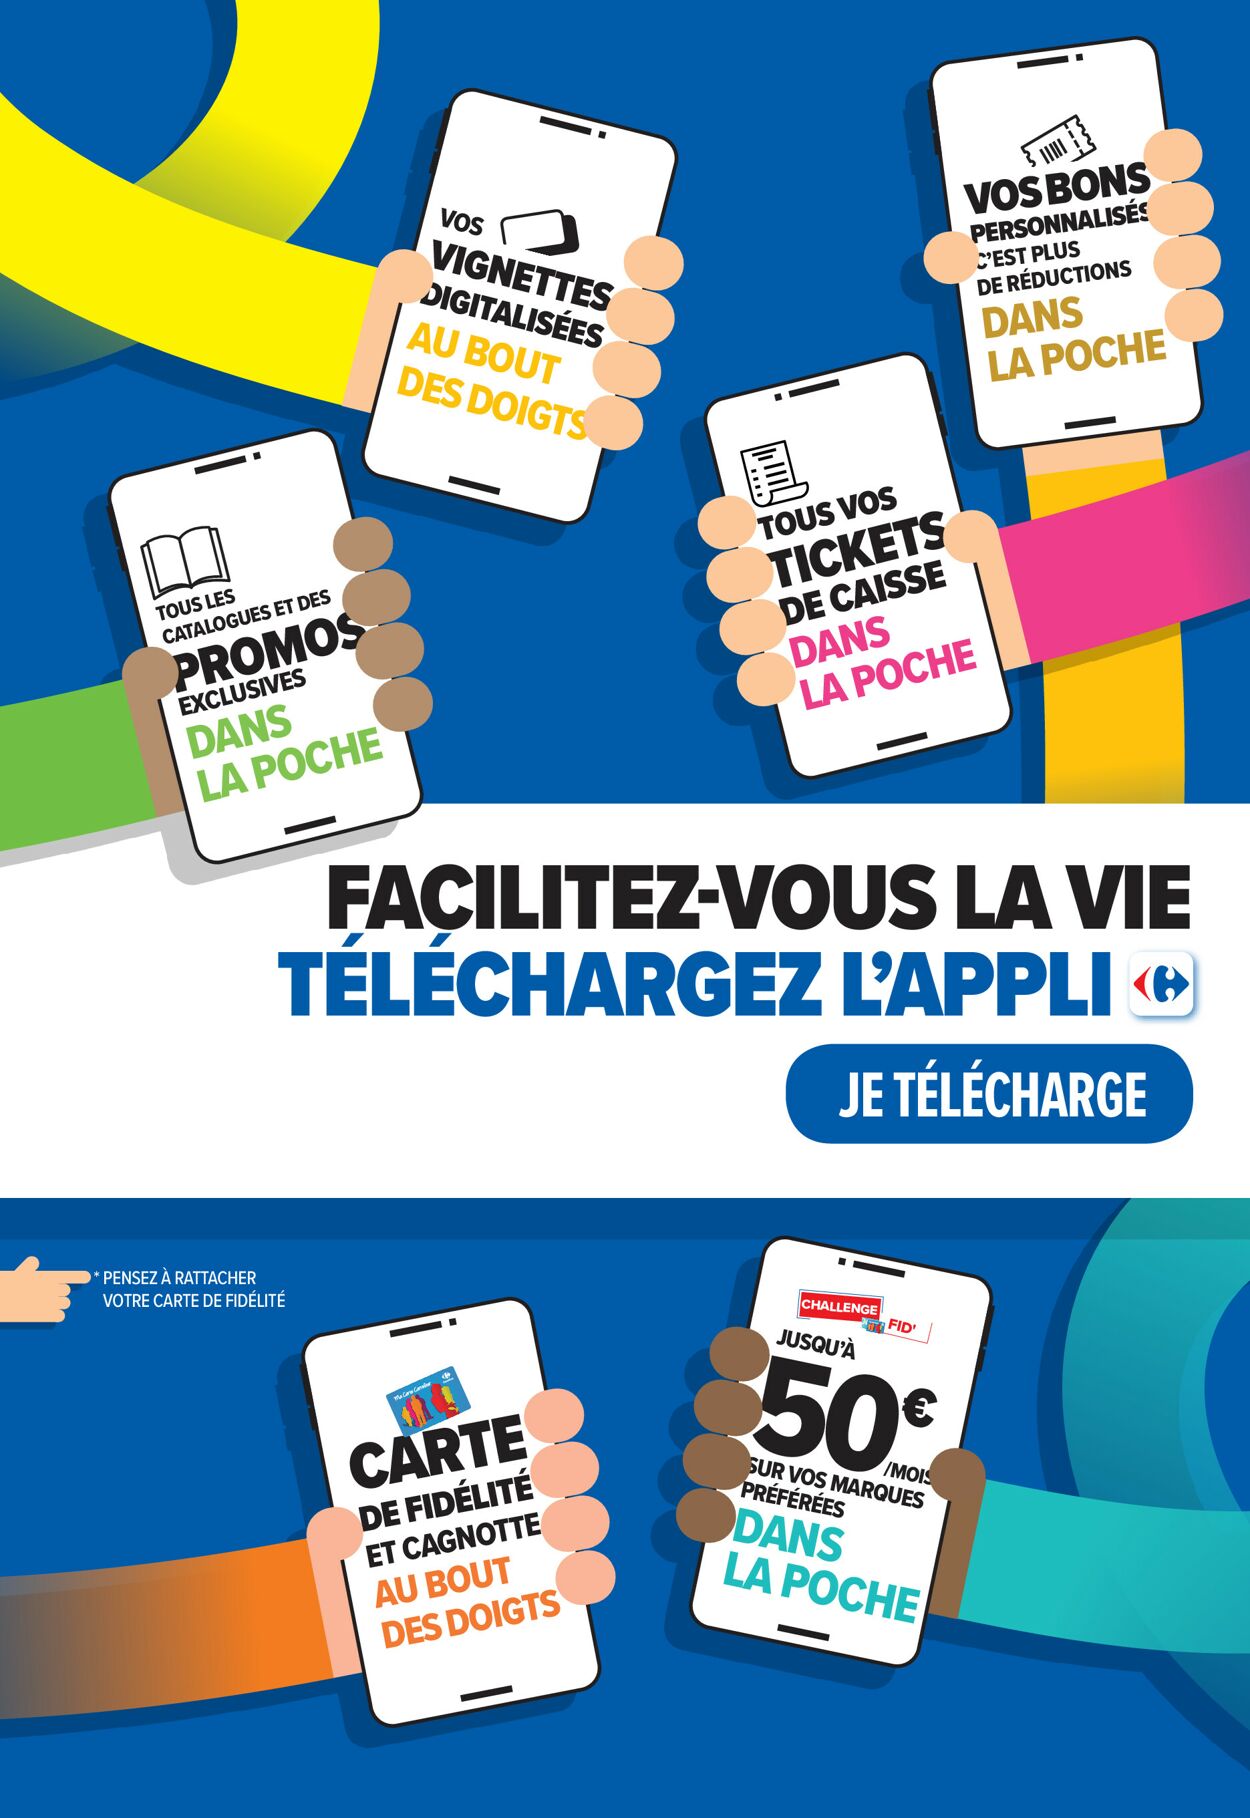 Carrefour Catalogue du 16.05.2023